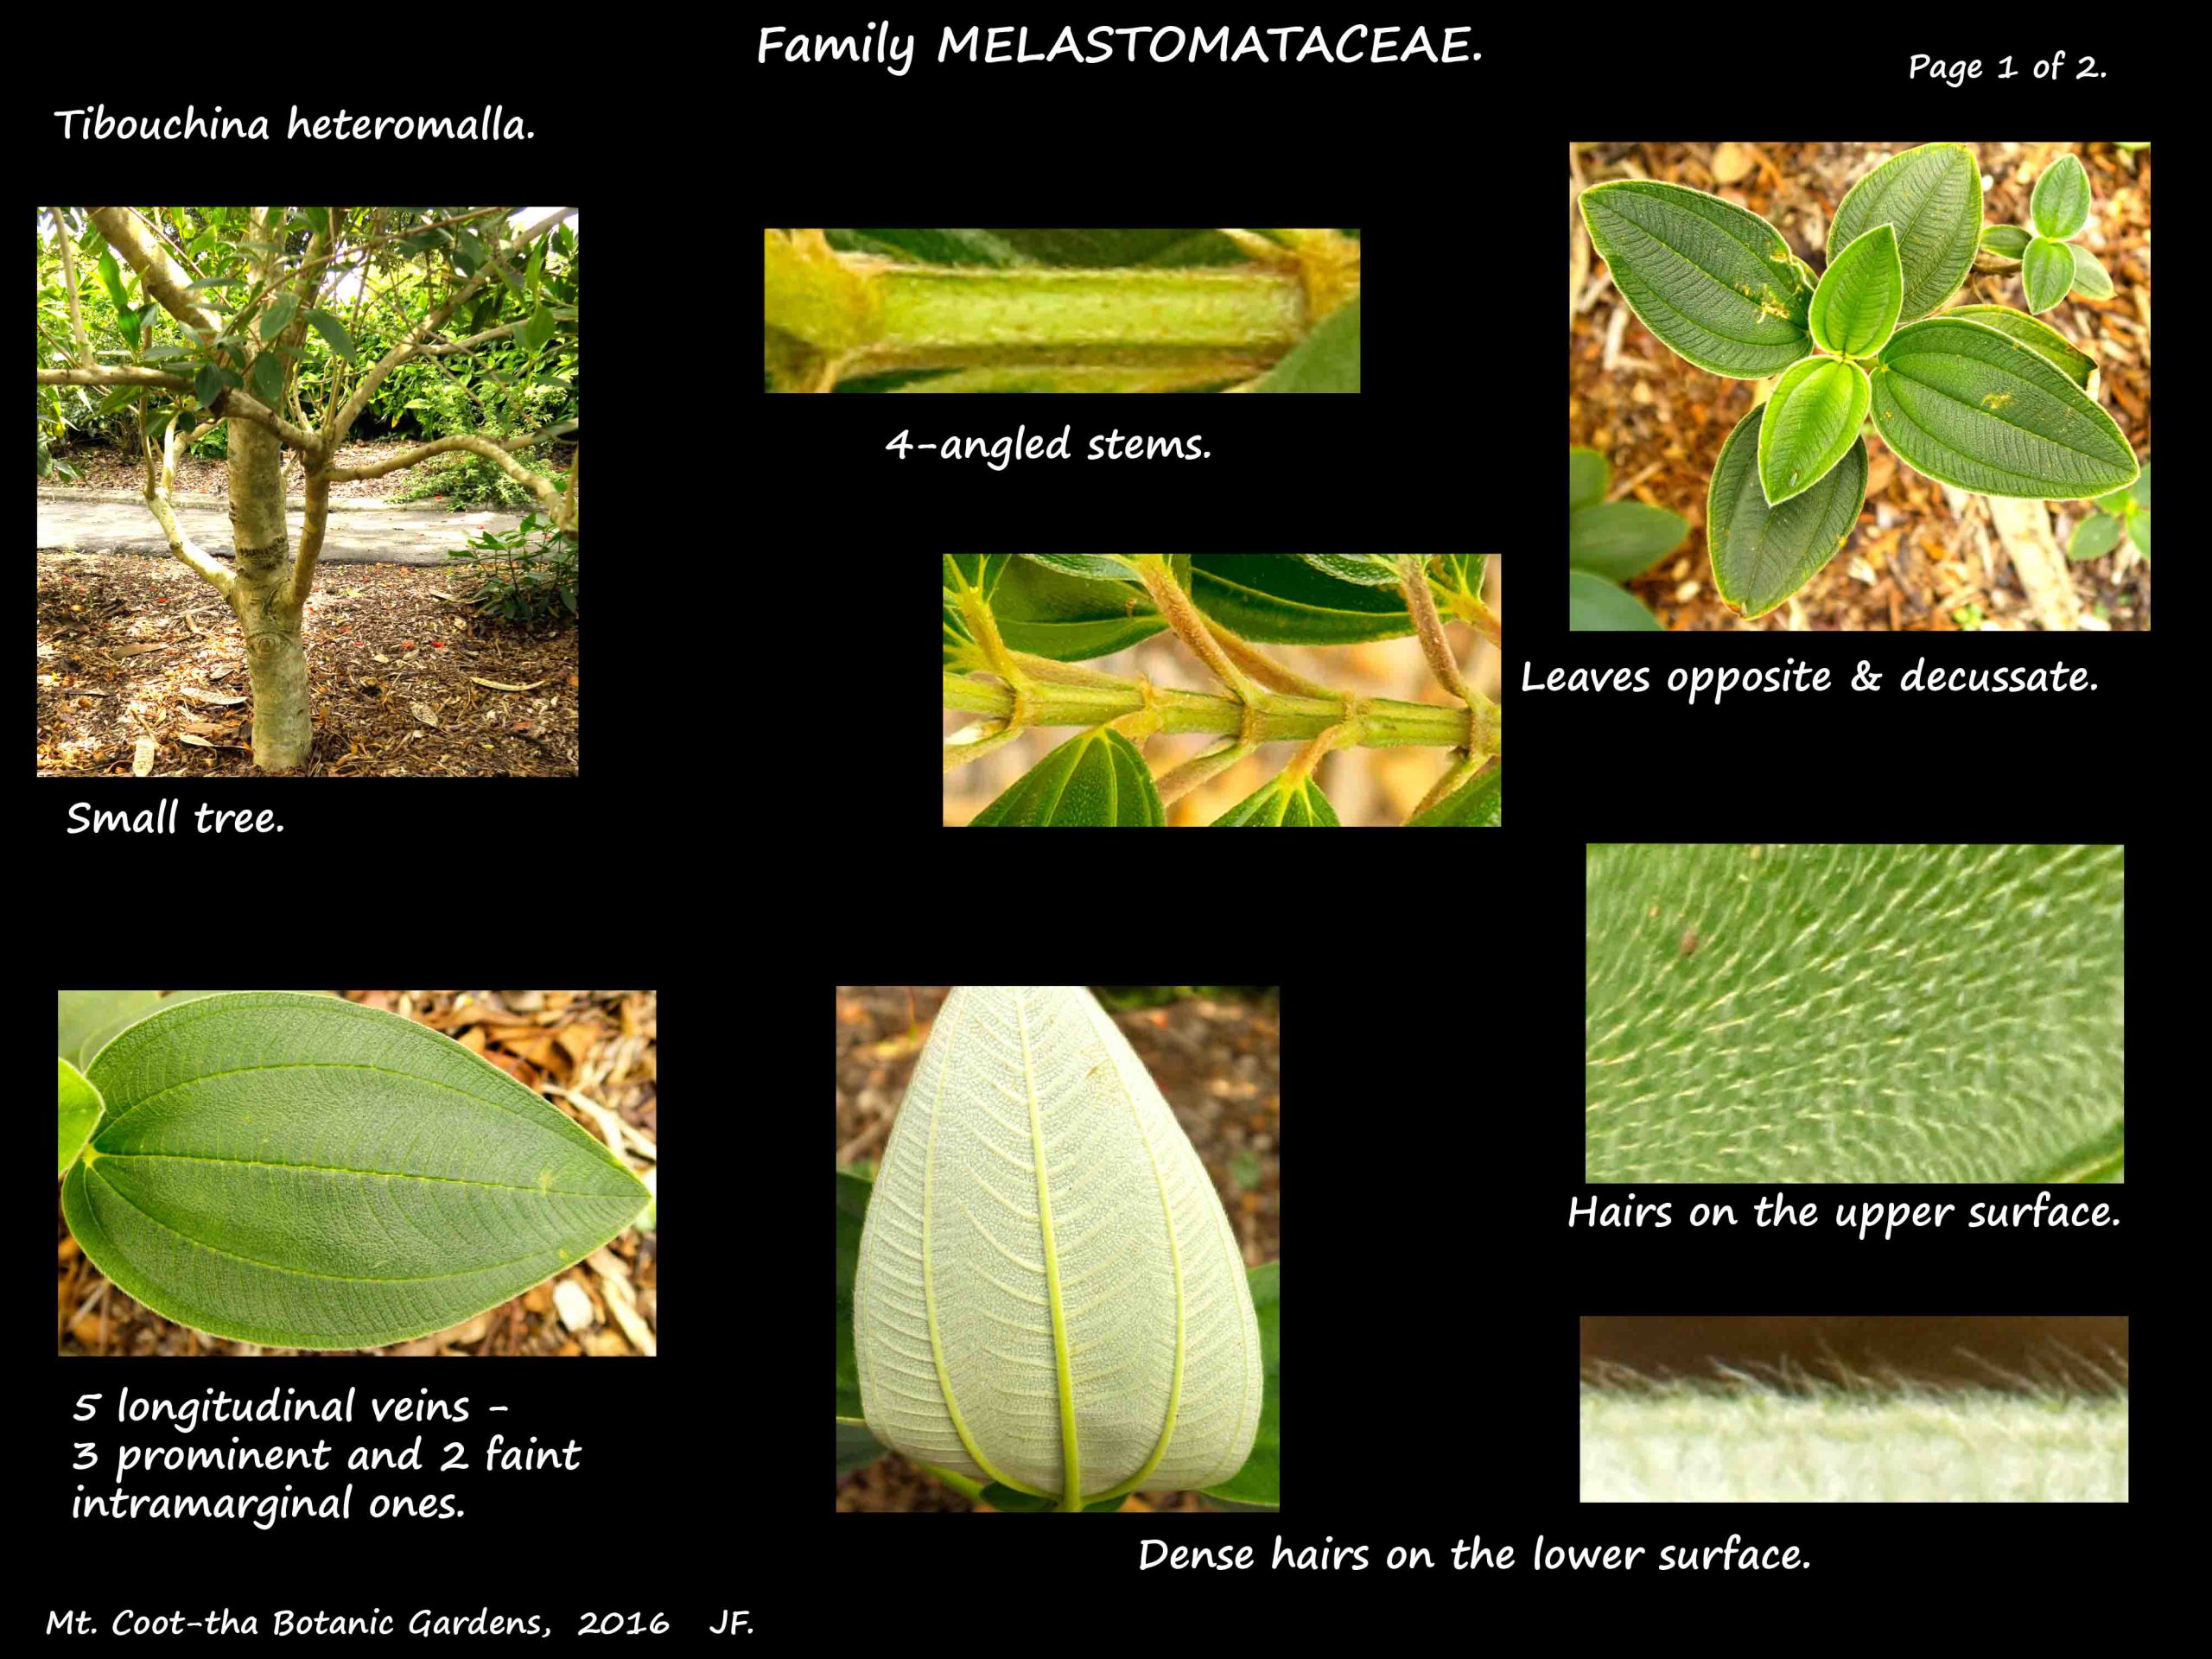 1 Tibouchina heteromalla leaves